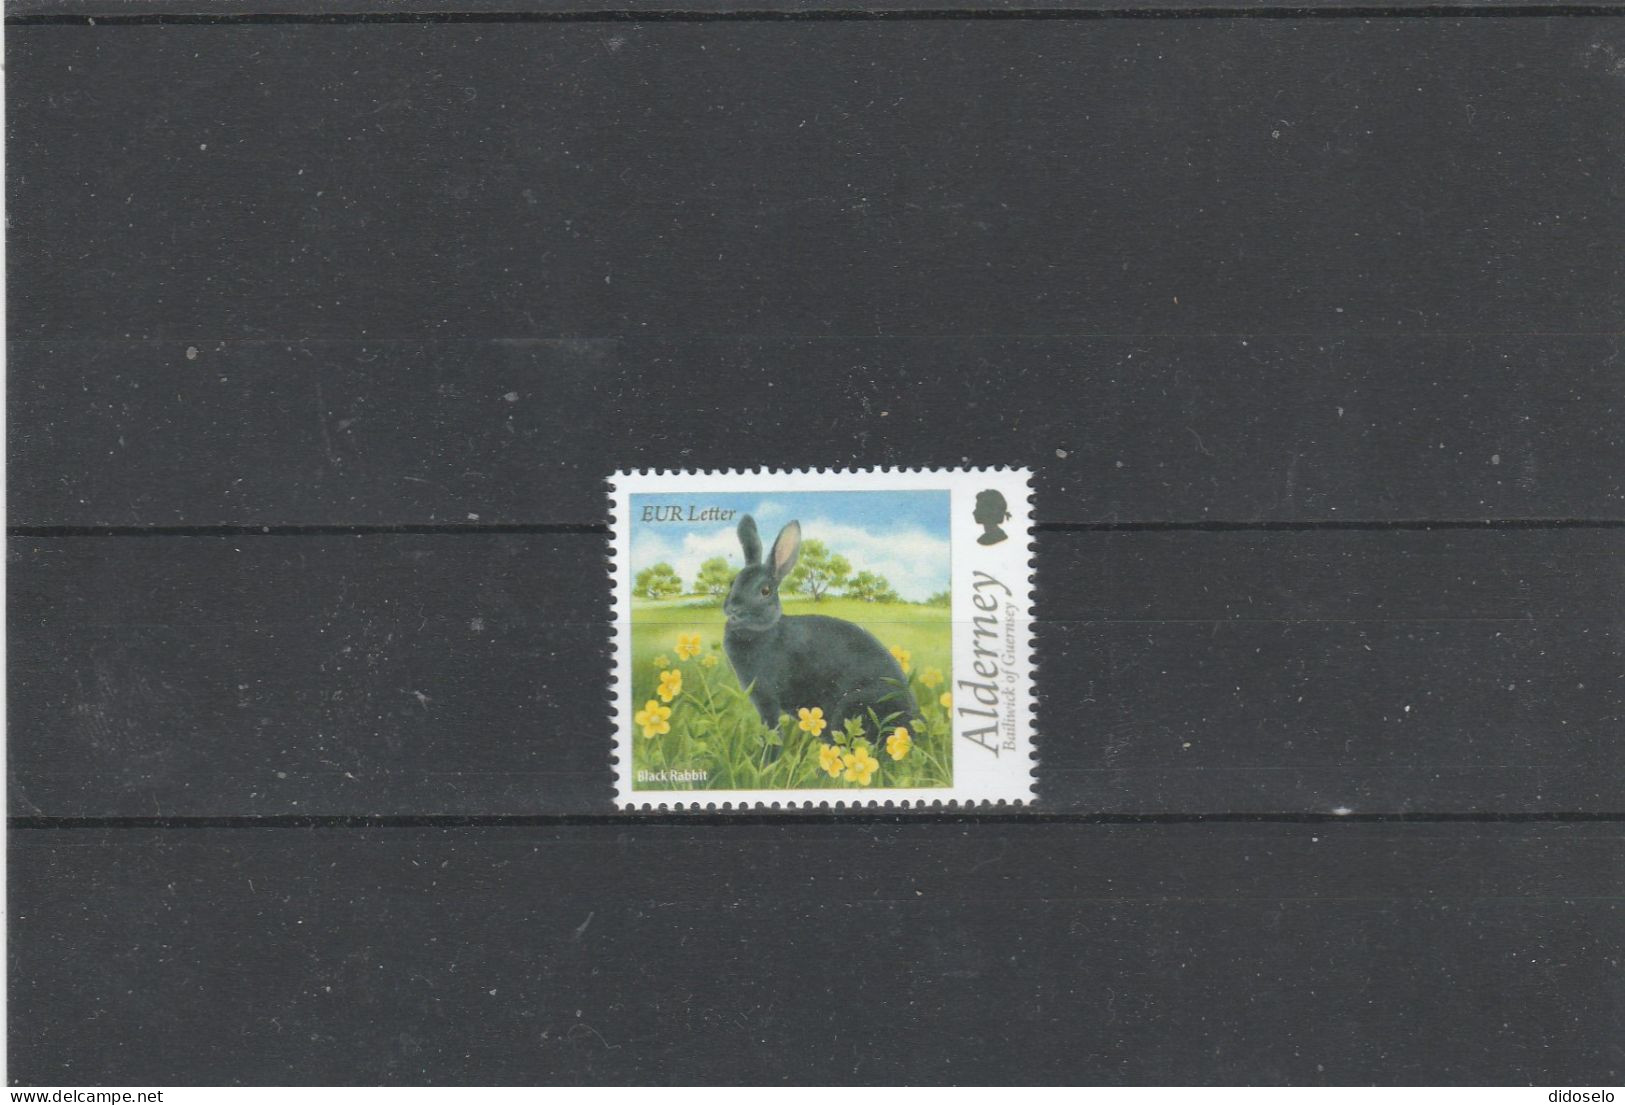 Alderney -  Black Rabbit - MNH (**) Stamp - Rabbits